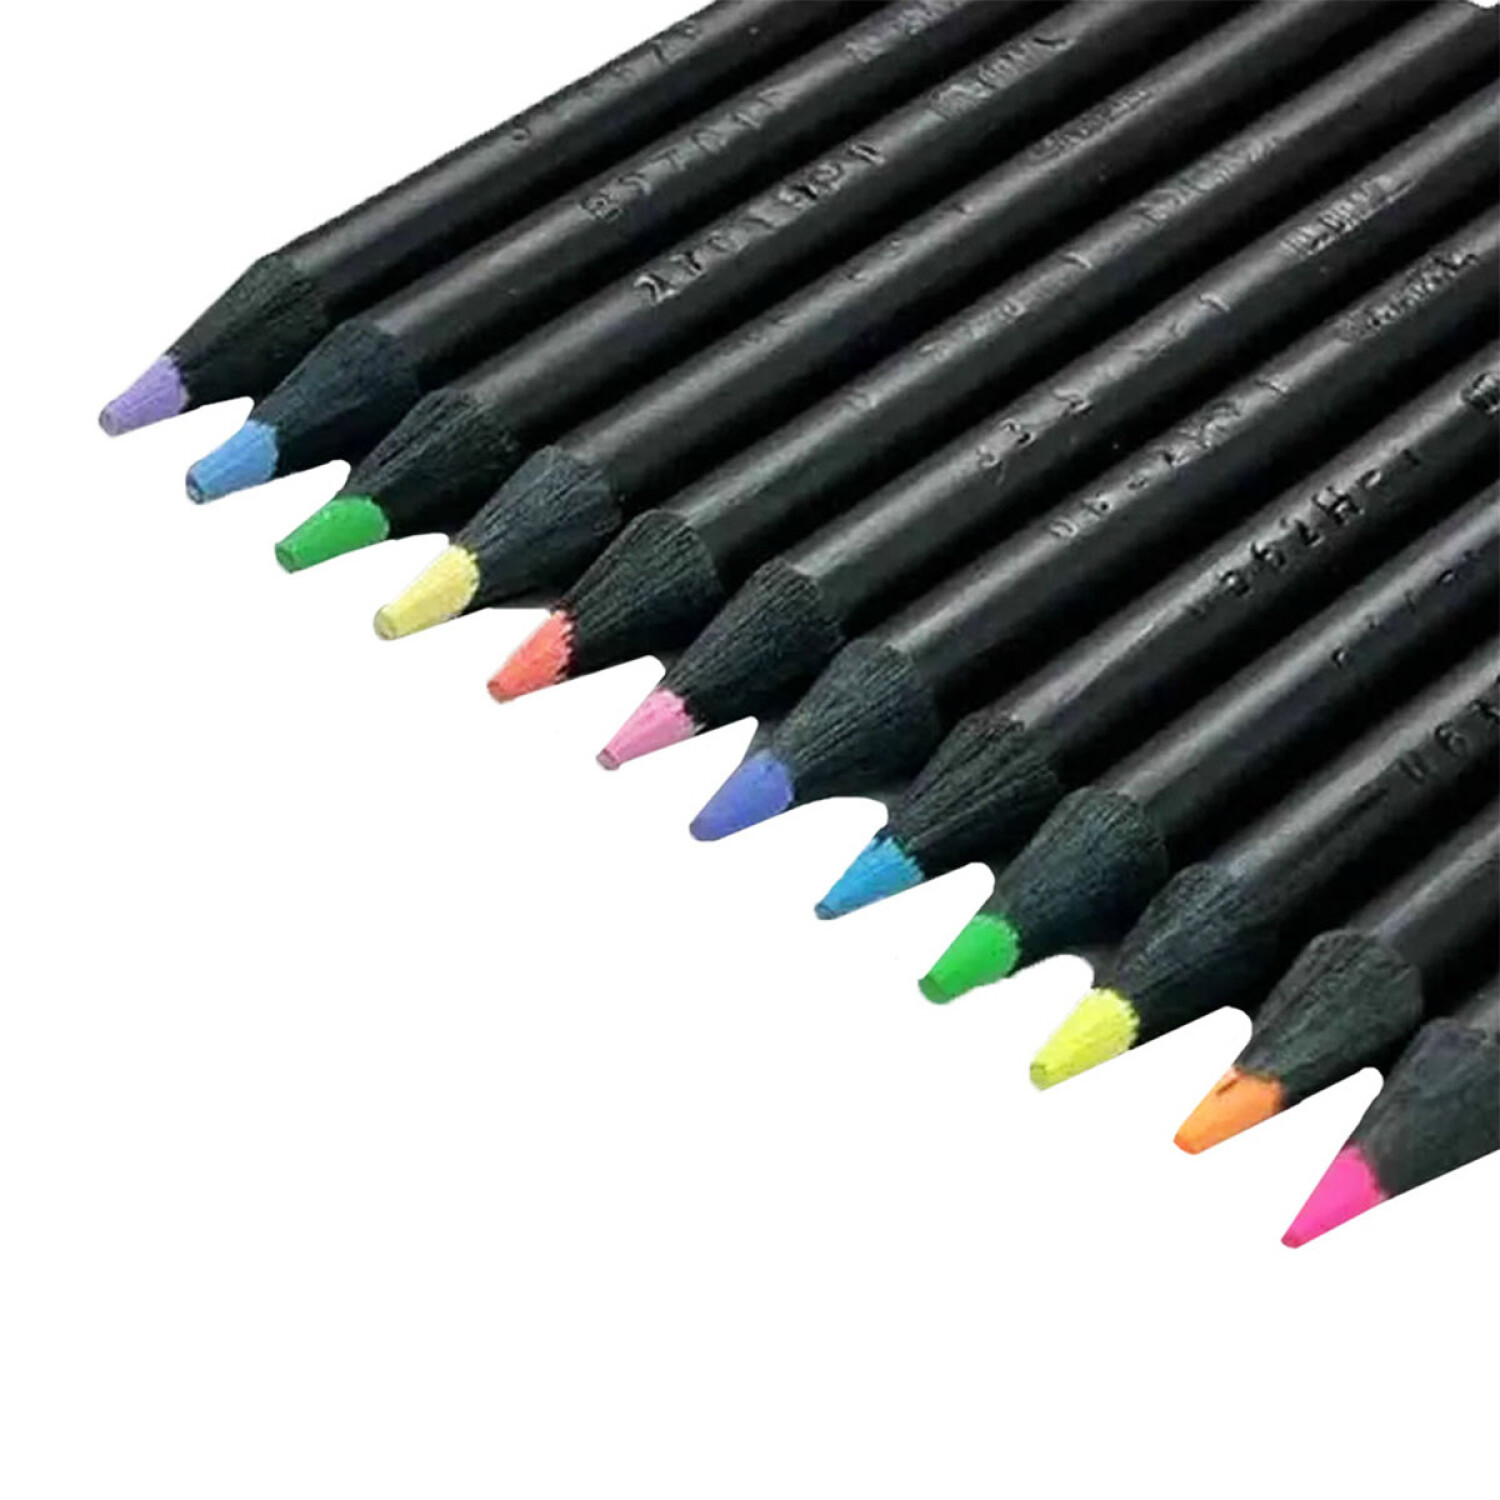 Lapices de colores Faber Castell x12 + 6 Neon